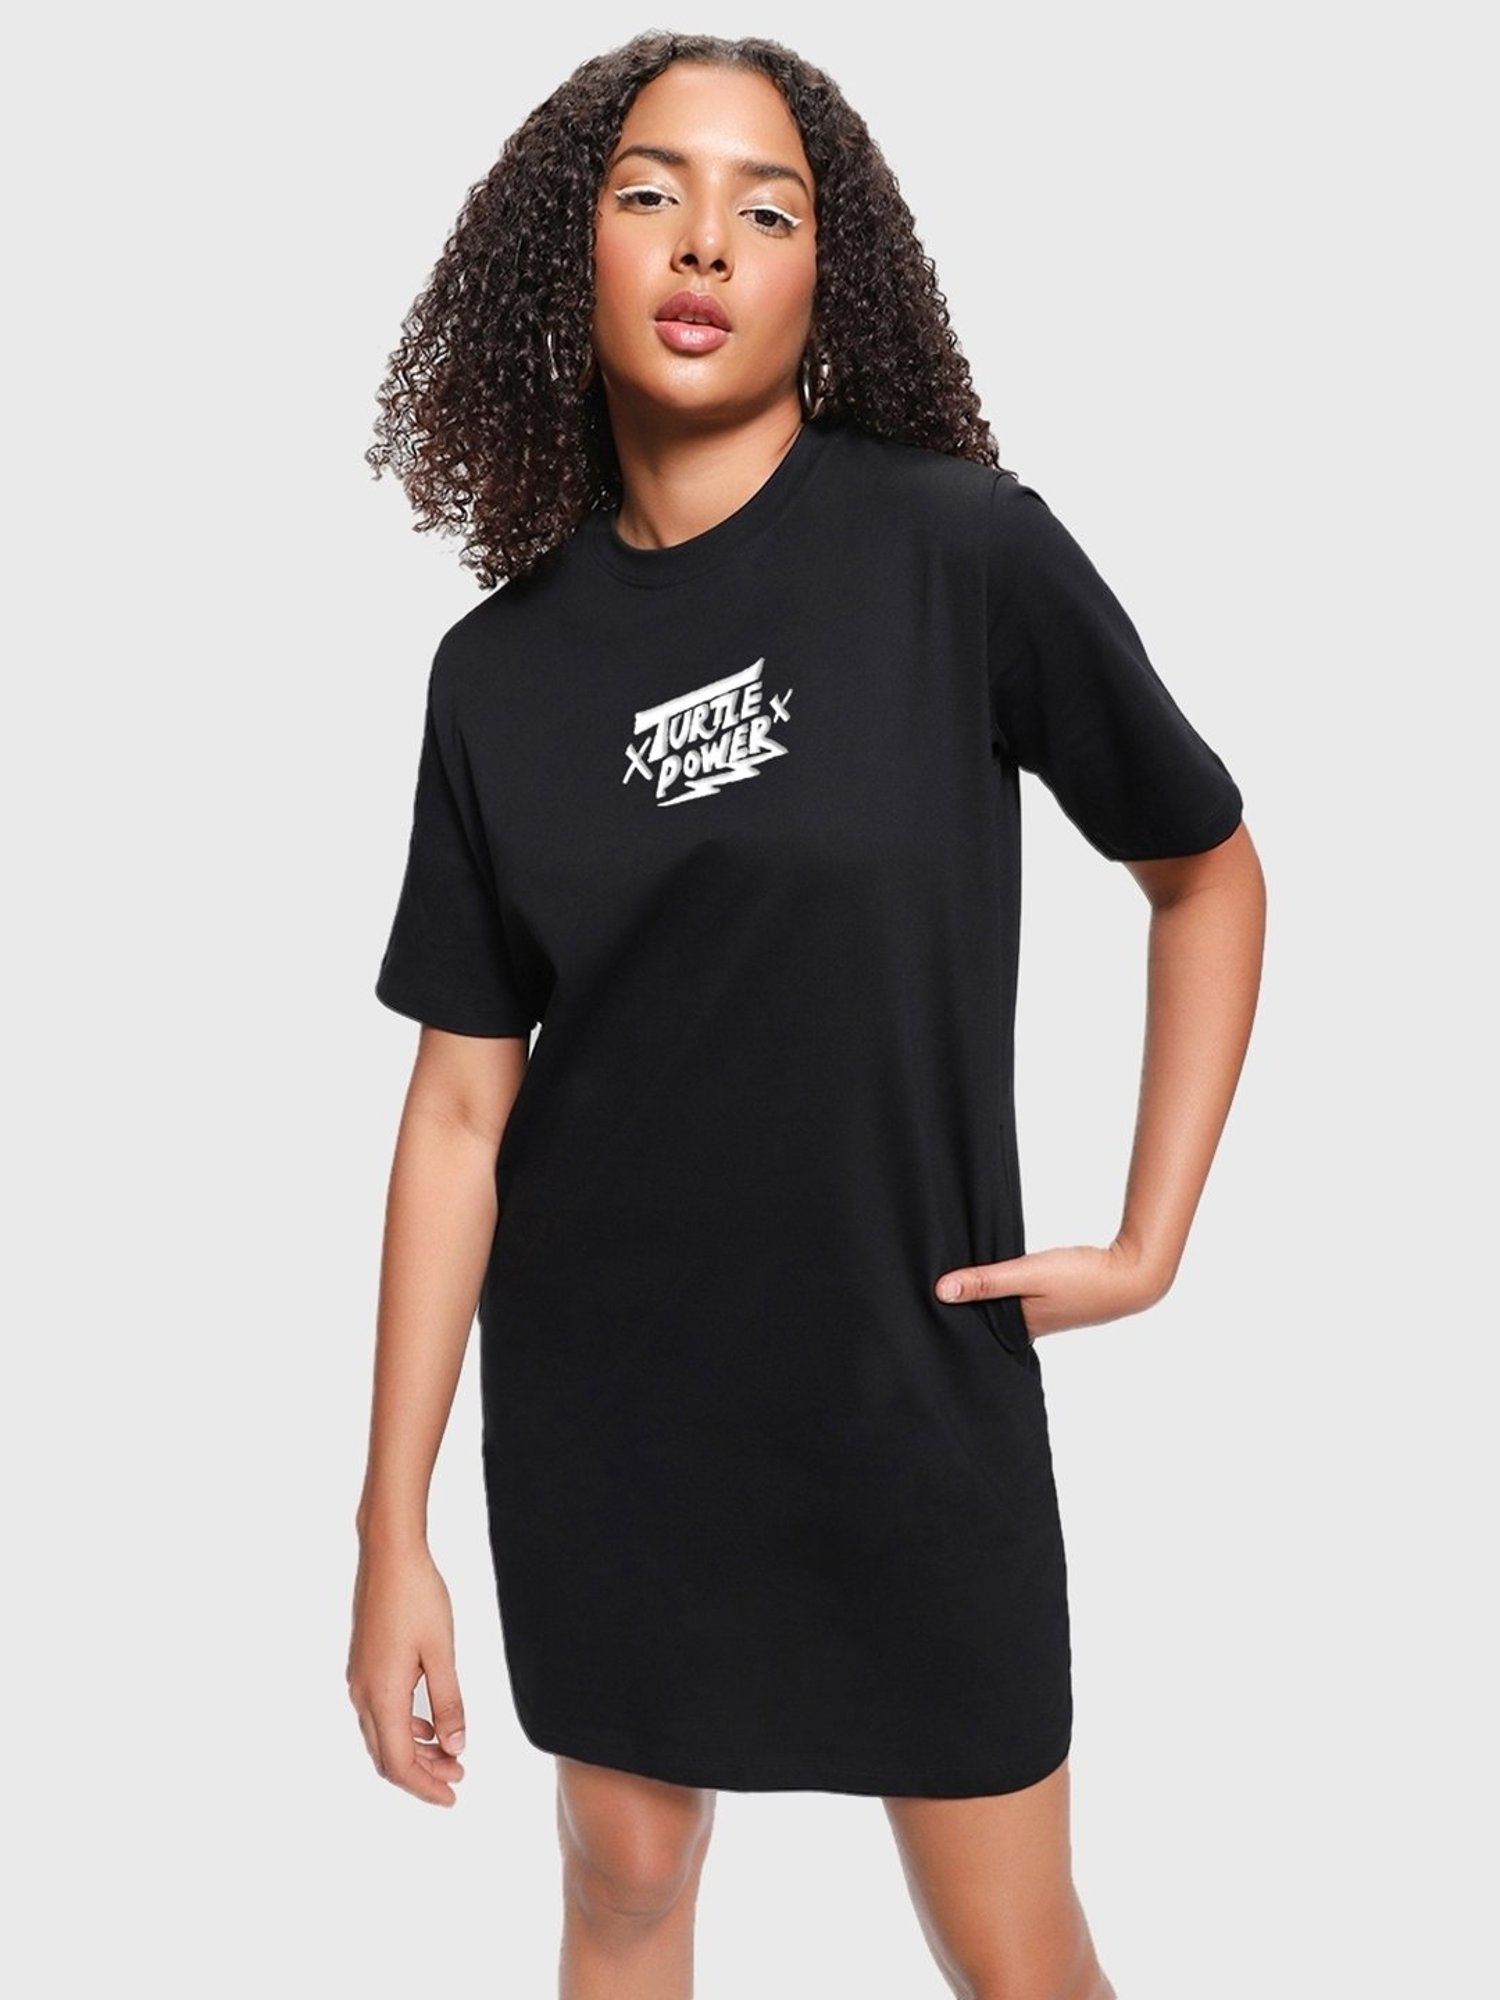 Women's XL tee shirt dress | Graphic tee dress, Oversized t shirt dress, Tshirt  dress outfit